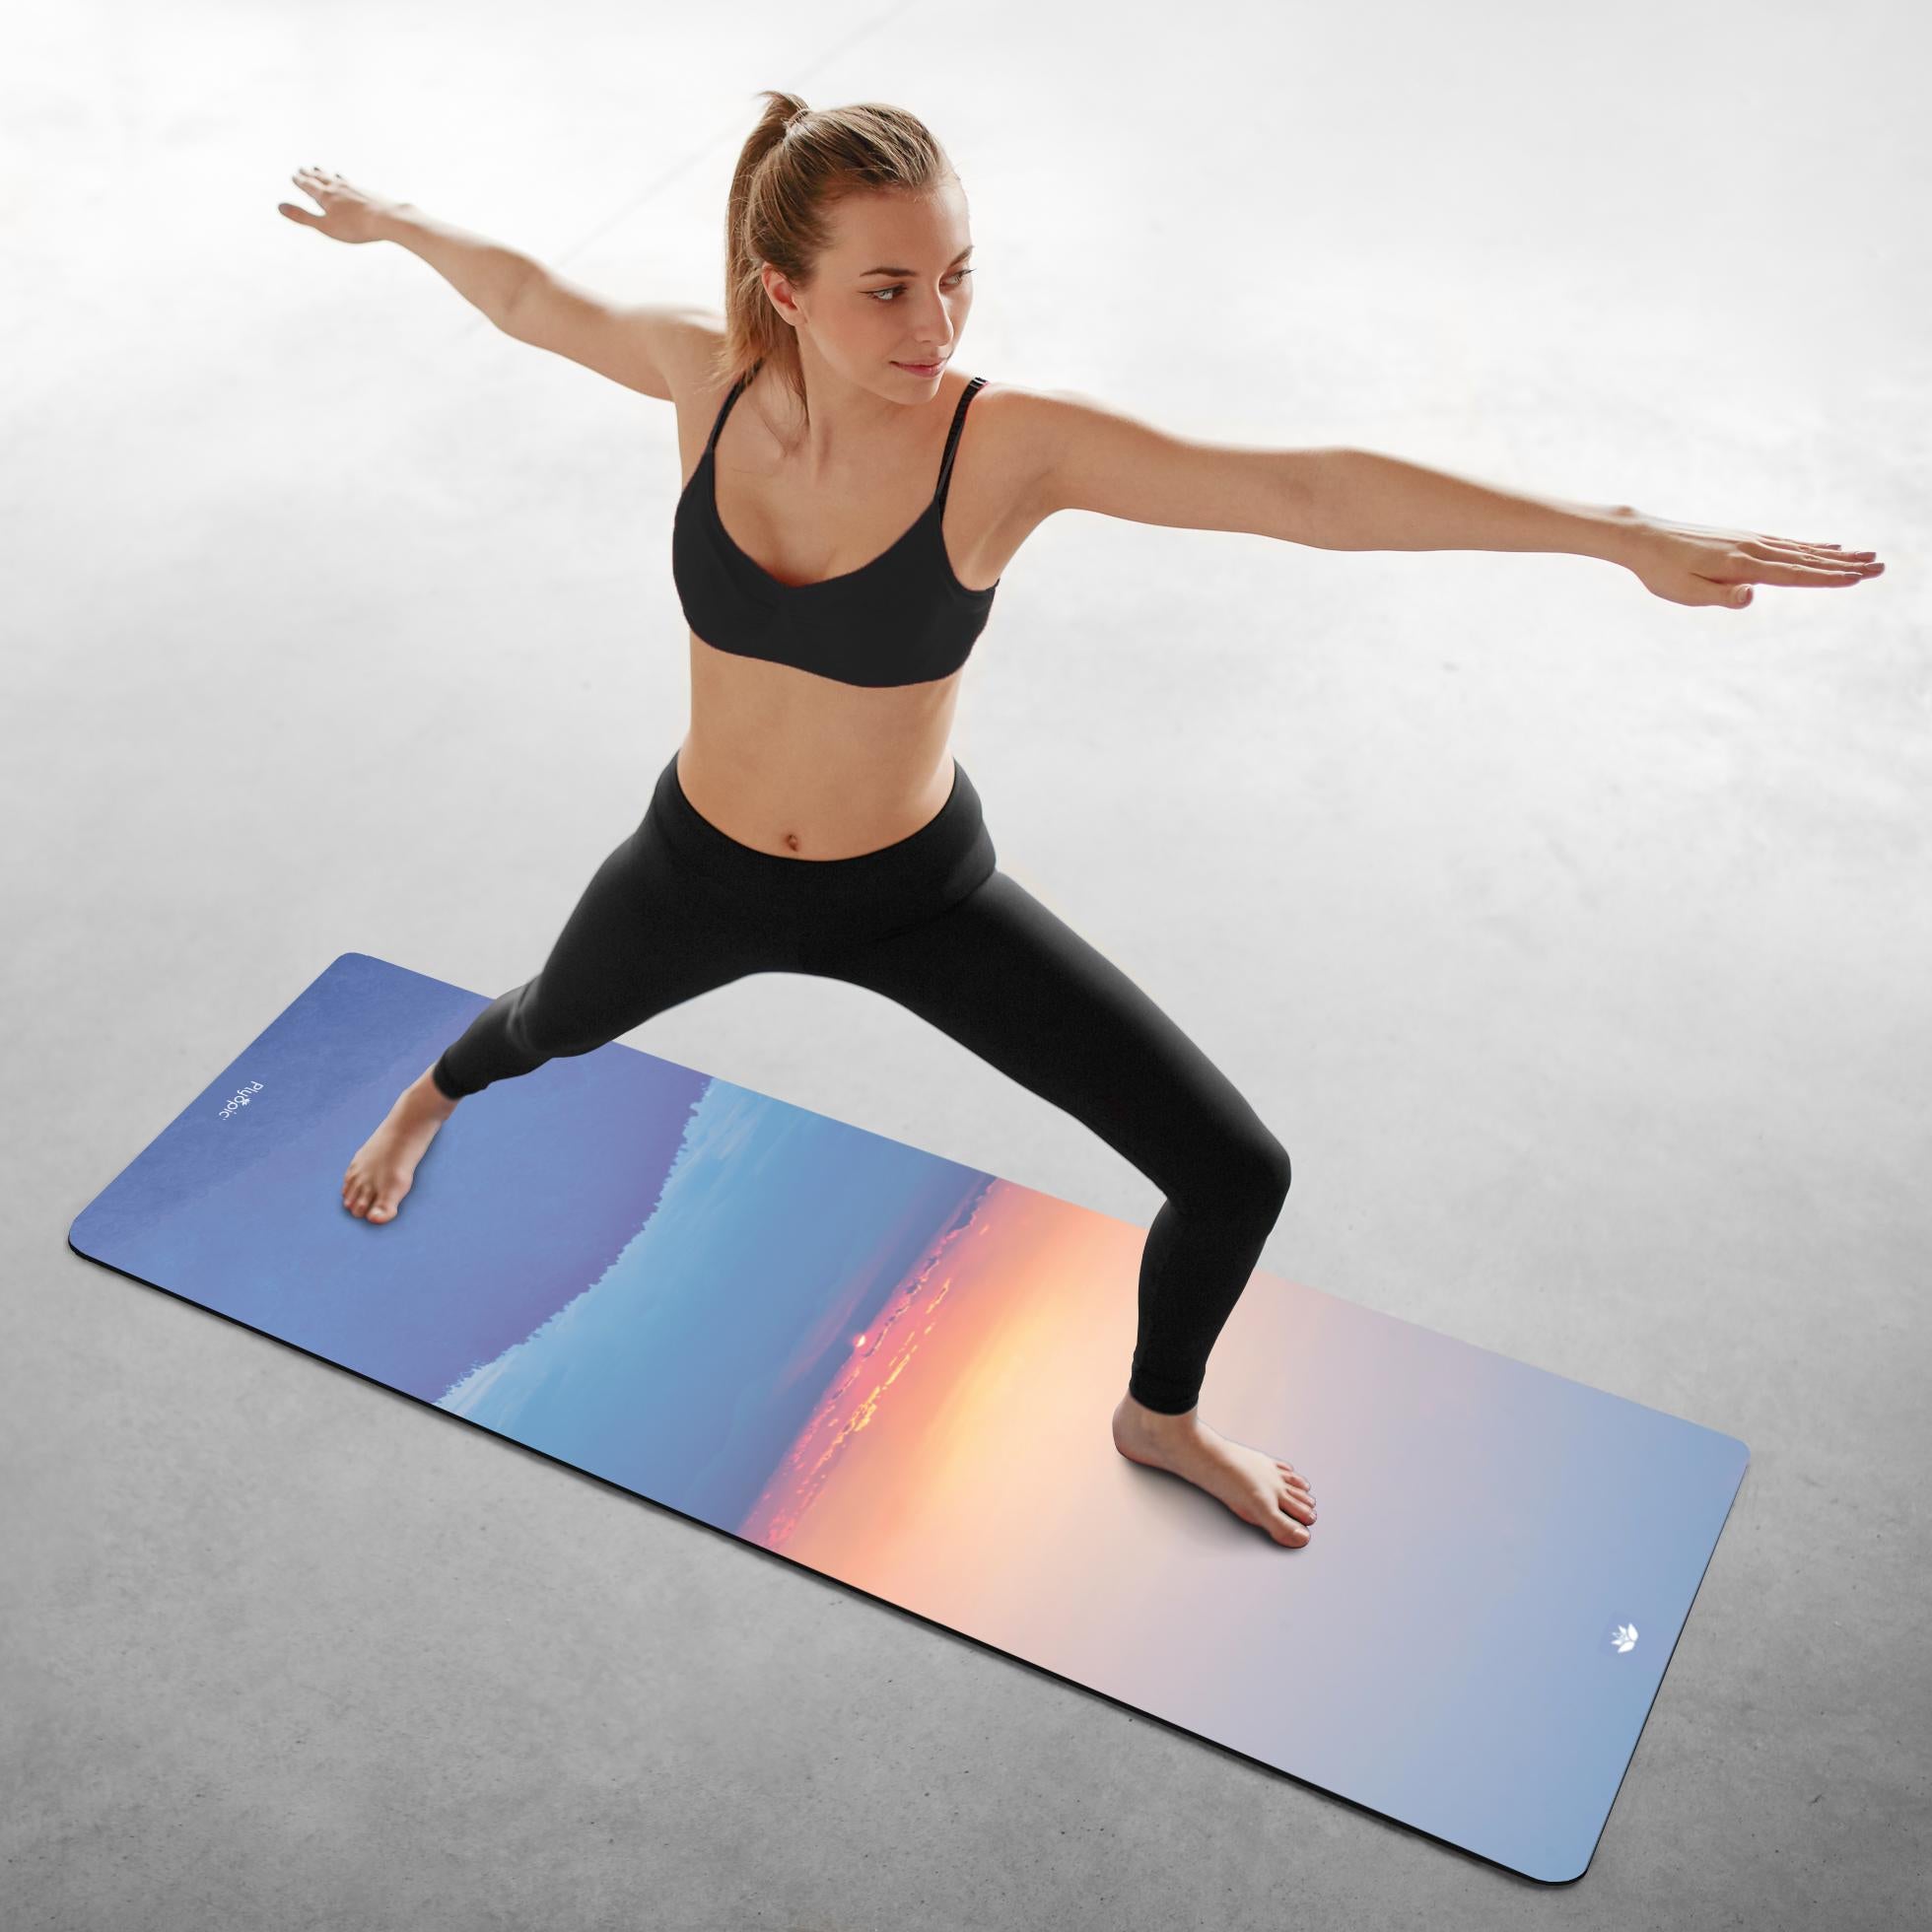 Prana Yoga Mat - Highly Dense, Tough and Anti-slip – KriyaFit